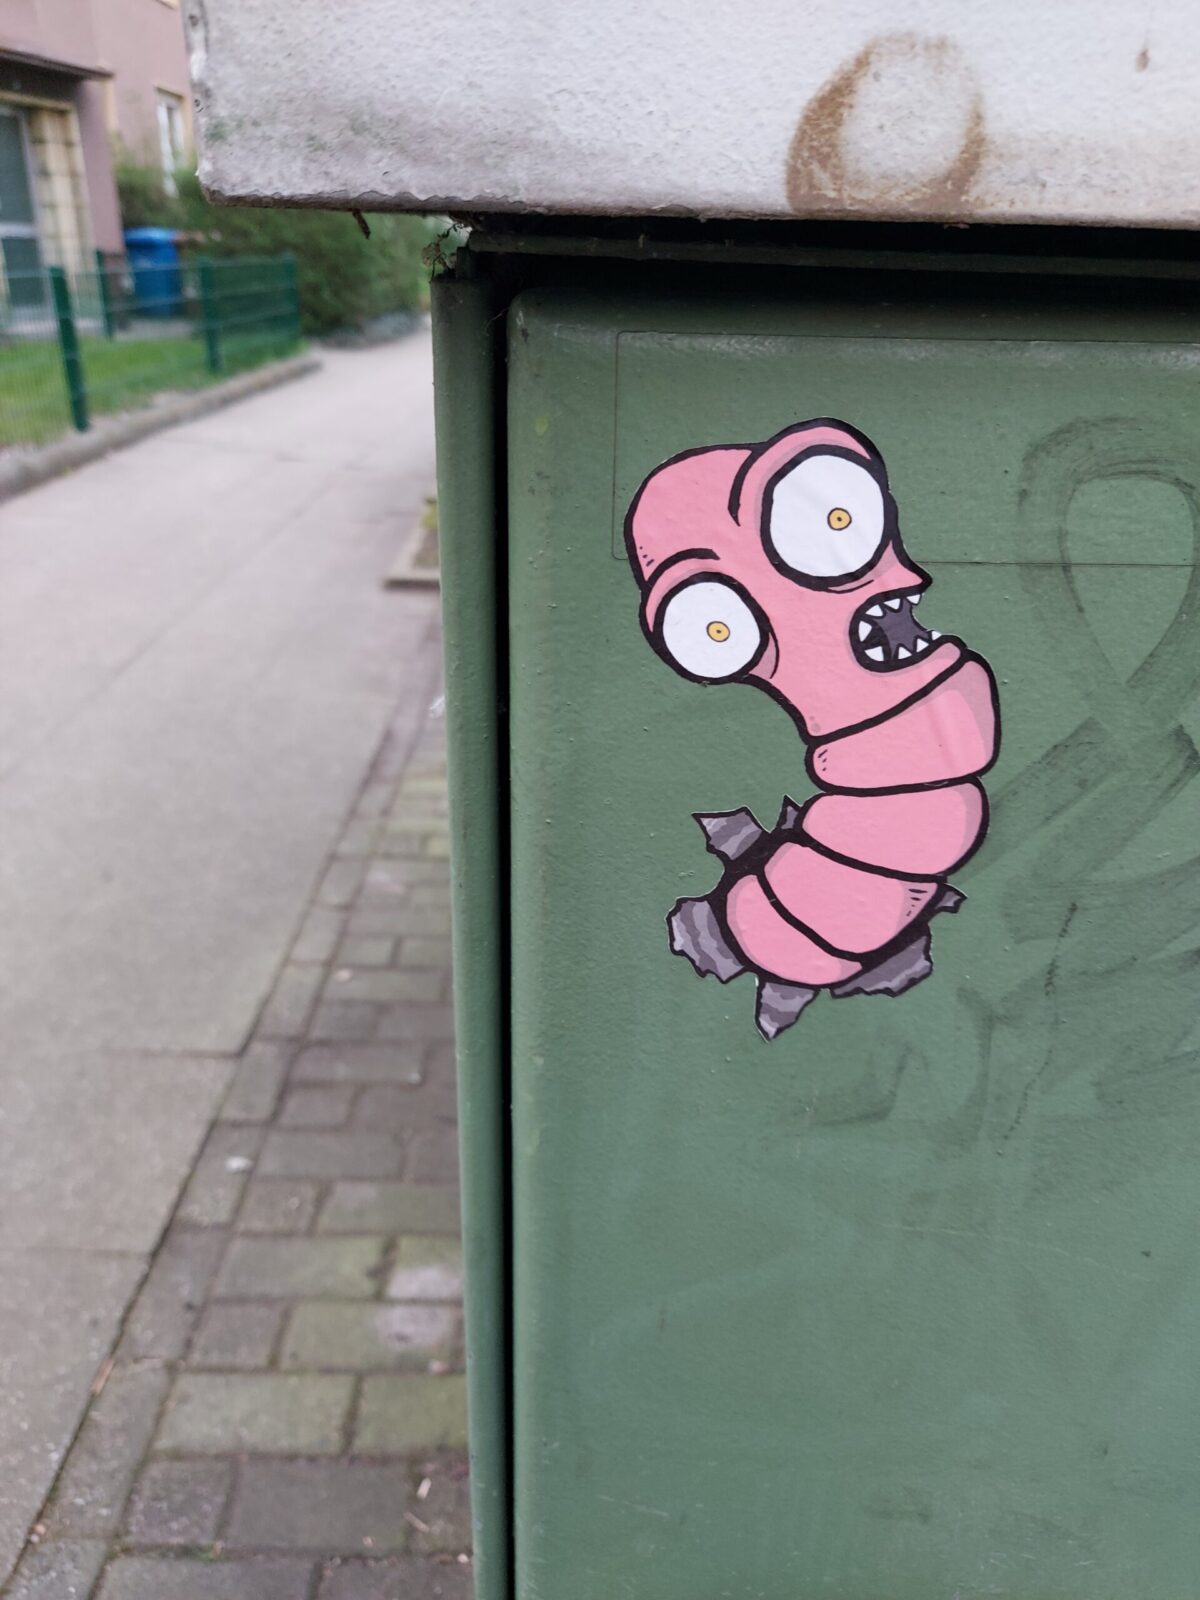 Beispiel-Foto zum Thema #cityzoo. Graffiti auf einer grünen Mülltonnenbox, zu sehen ist ein rosafarbener Wurm mit weit aufgerissenen Augen